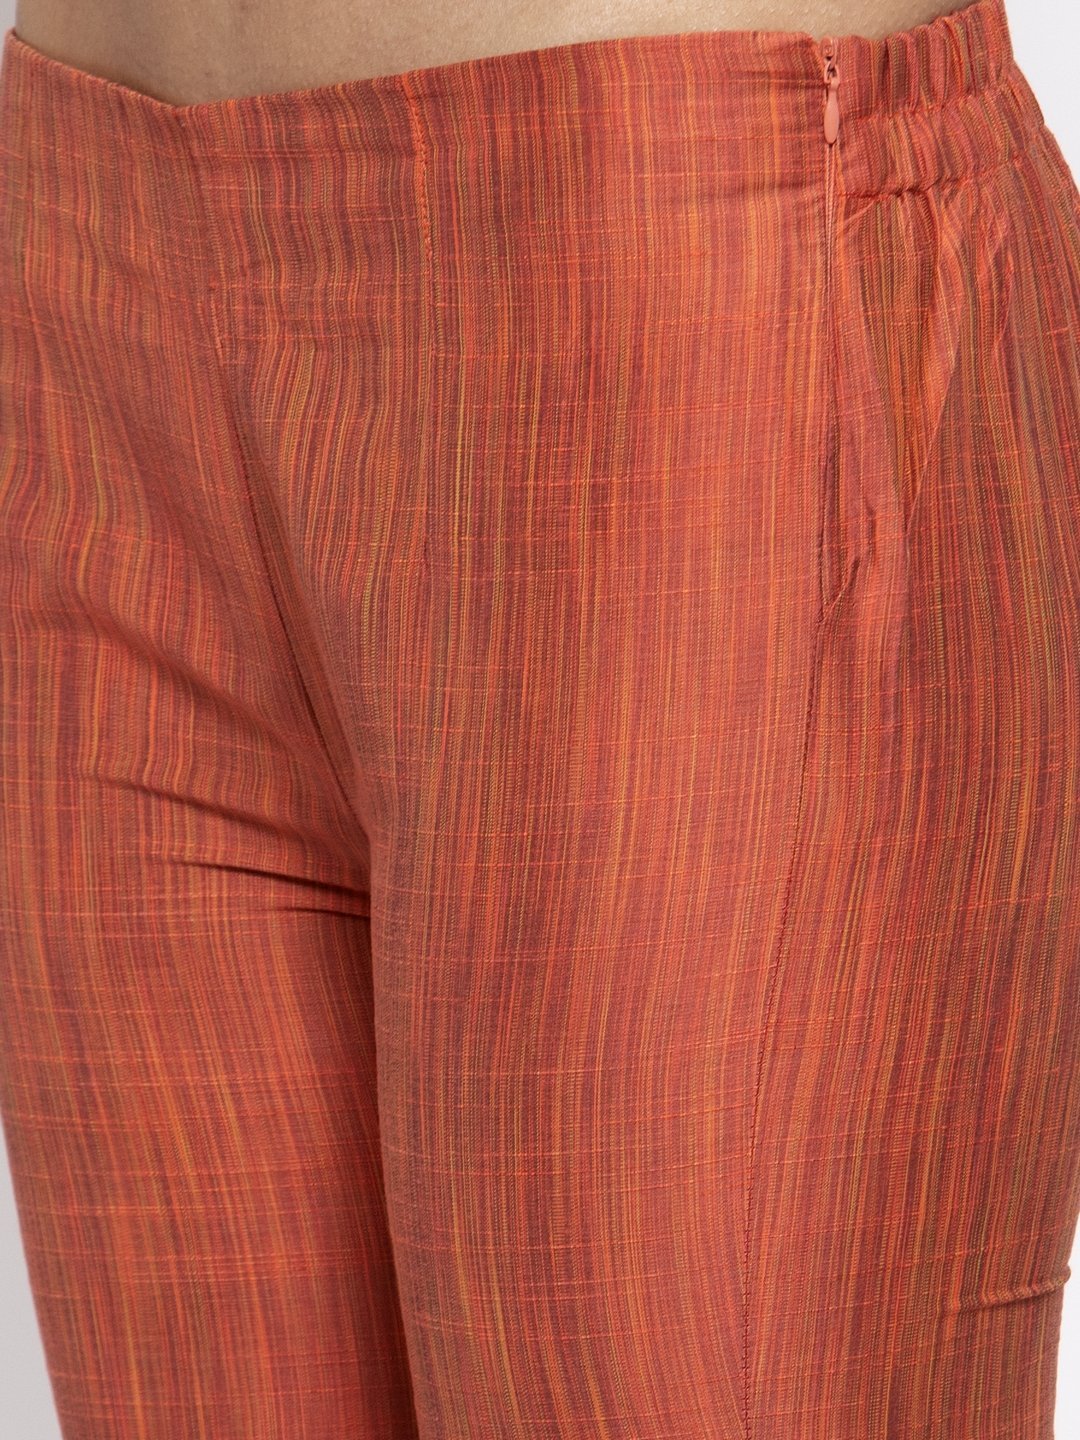 Women's Orange Self Striped Kurta with Trousers & Georgette Dupatta - Jompers